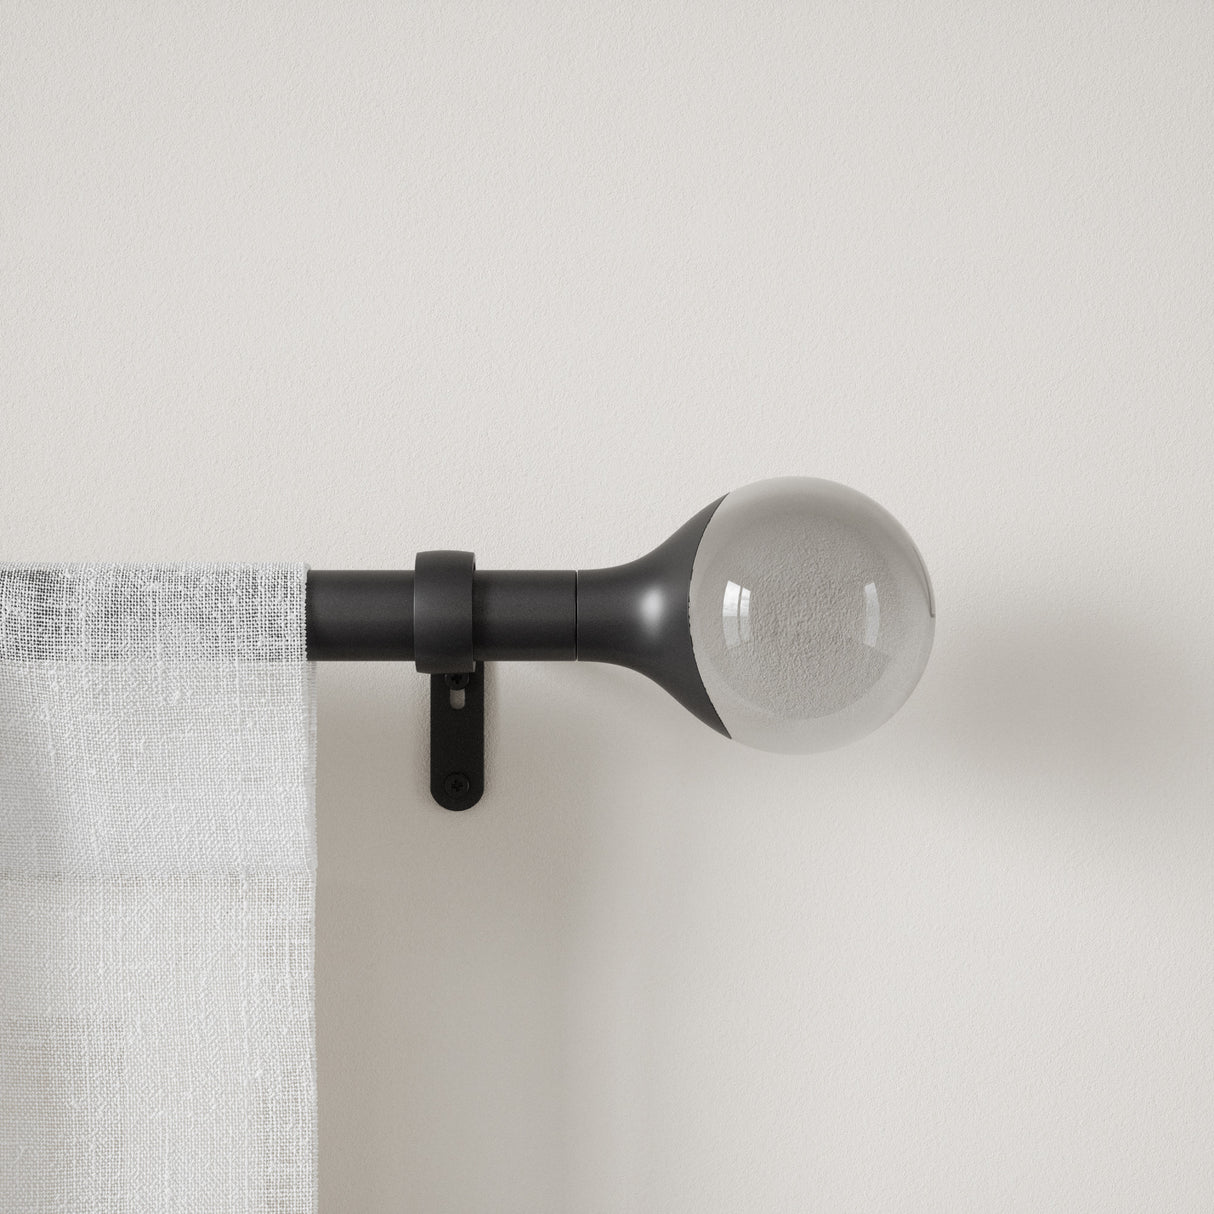 Single Curtain Rods | color: Eco-Friendly Matte-Black | size: 36-72" (91-183 cm) | diameter: 1" (2.5 cm) | Hover